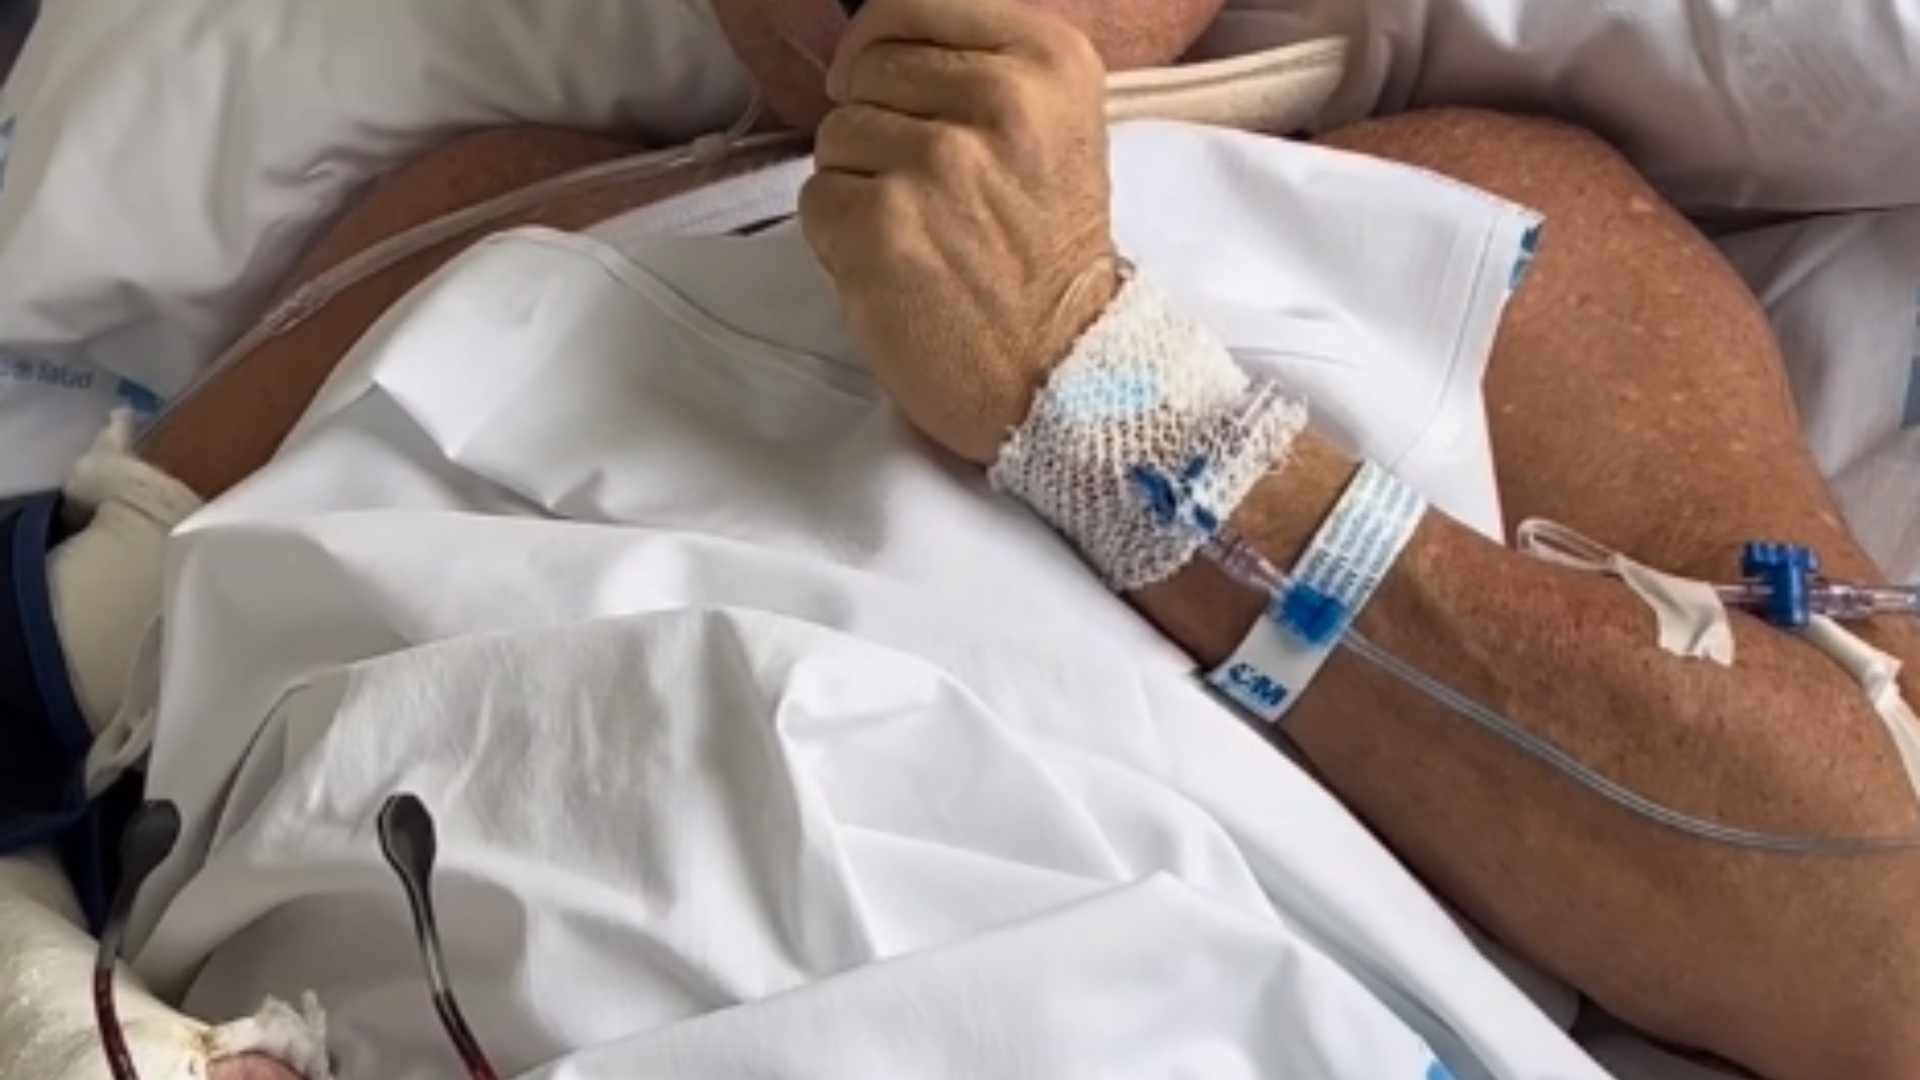 Joaquín Torres ingresado, muy grave por un accidente de moto, vídeo en el hospital